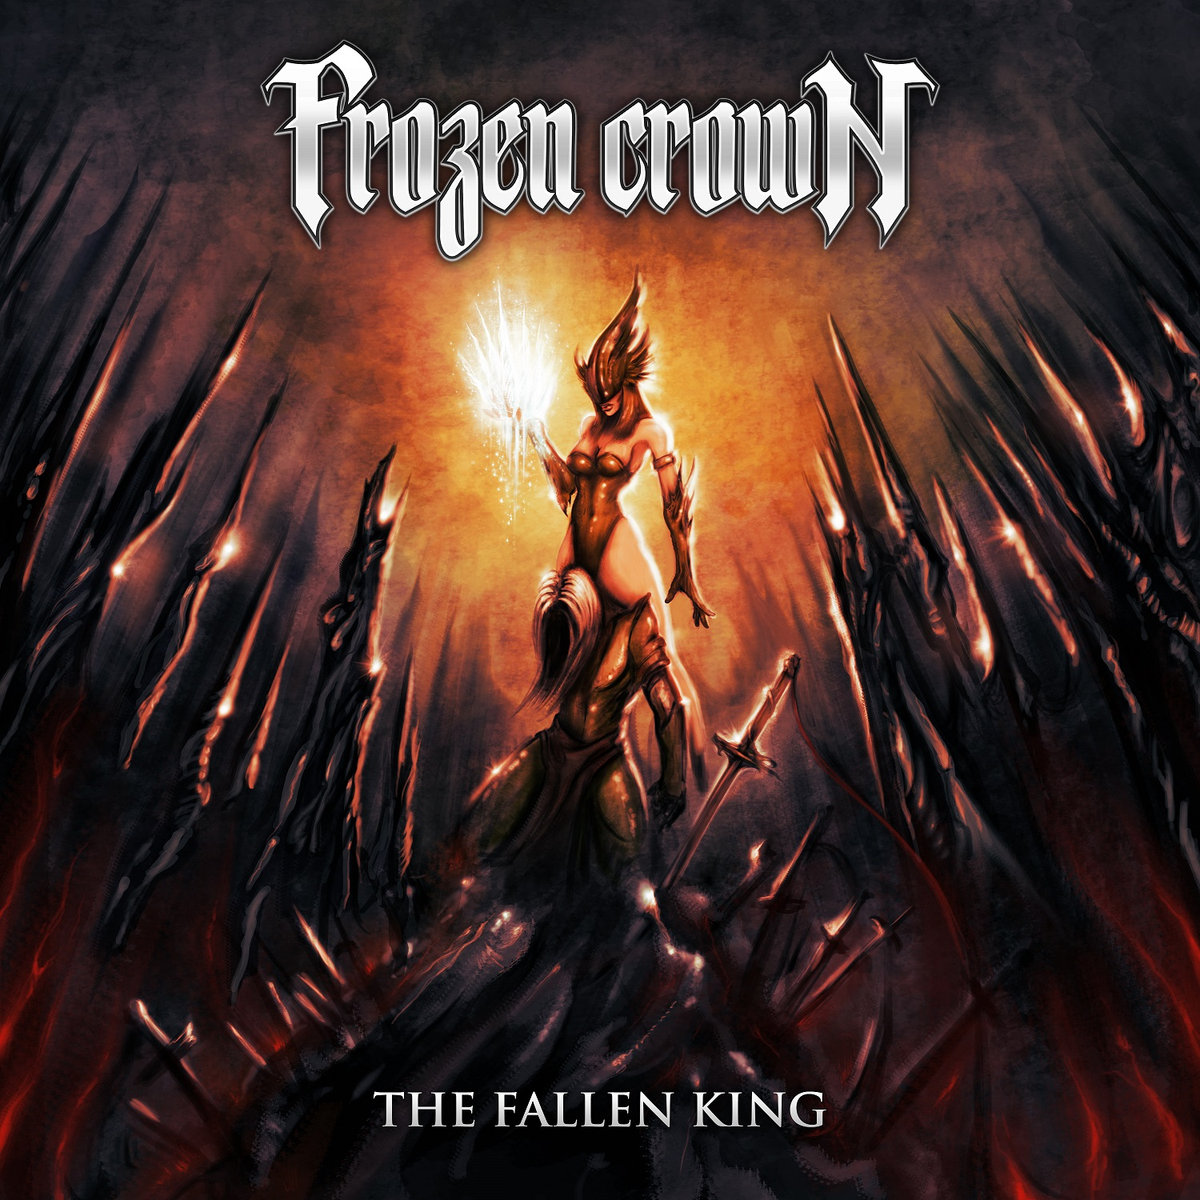 Frozen Crown: The Fallen King